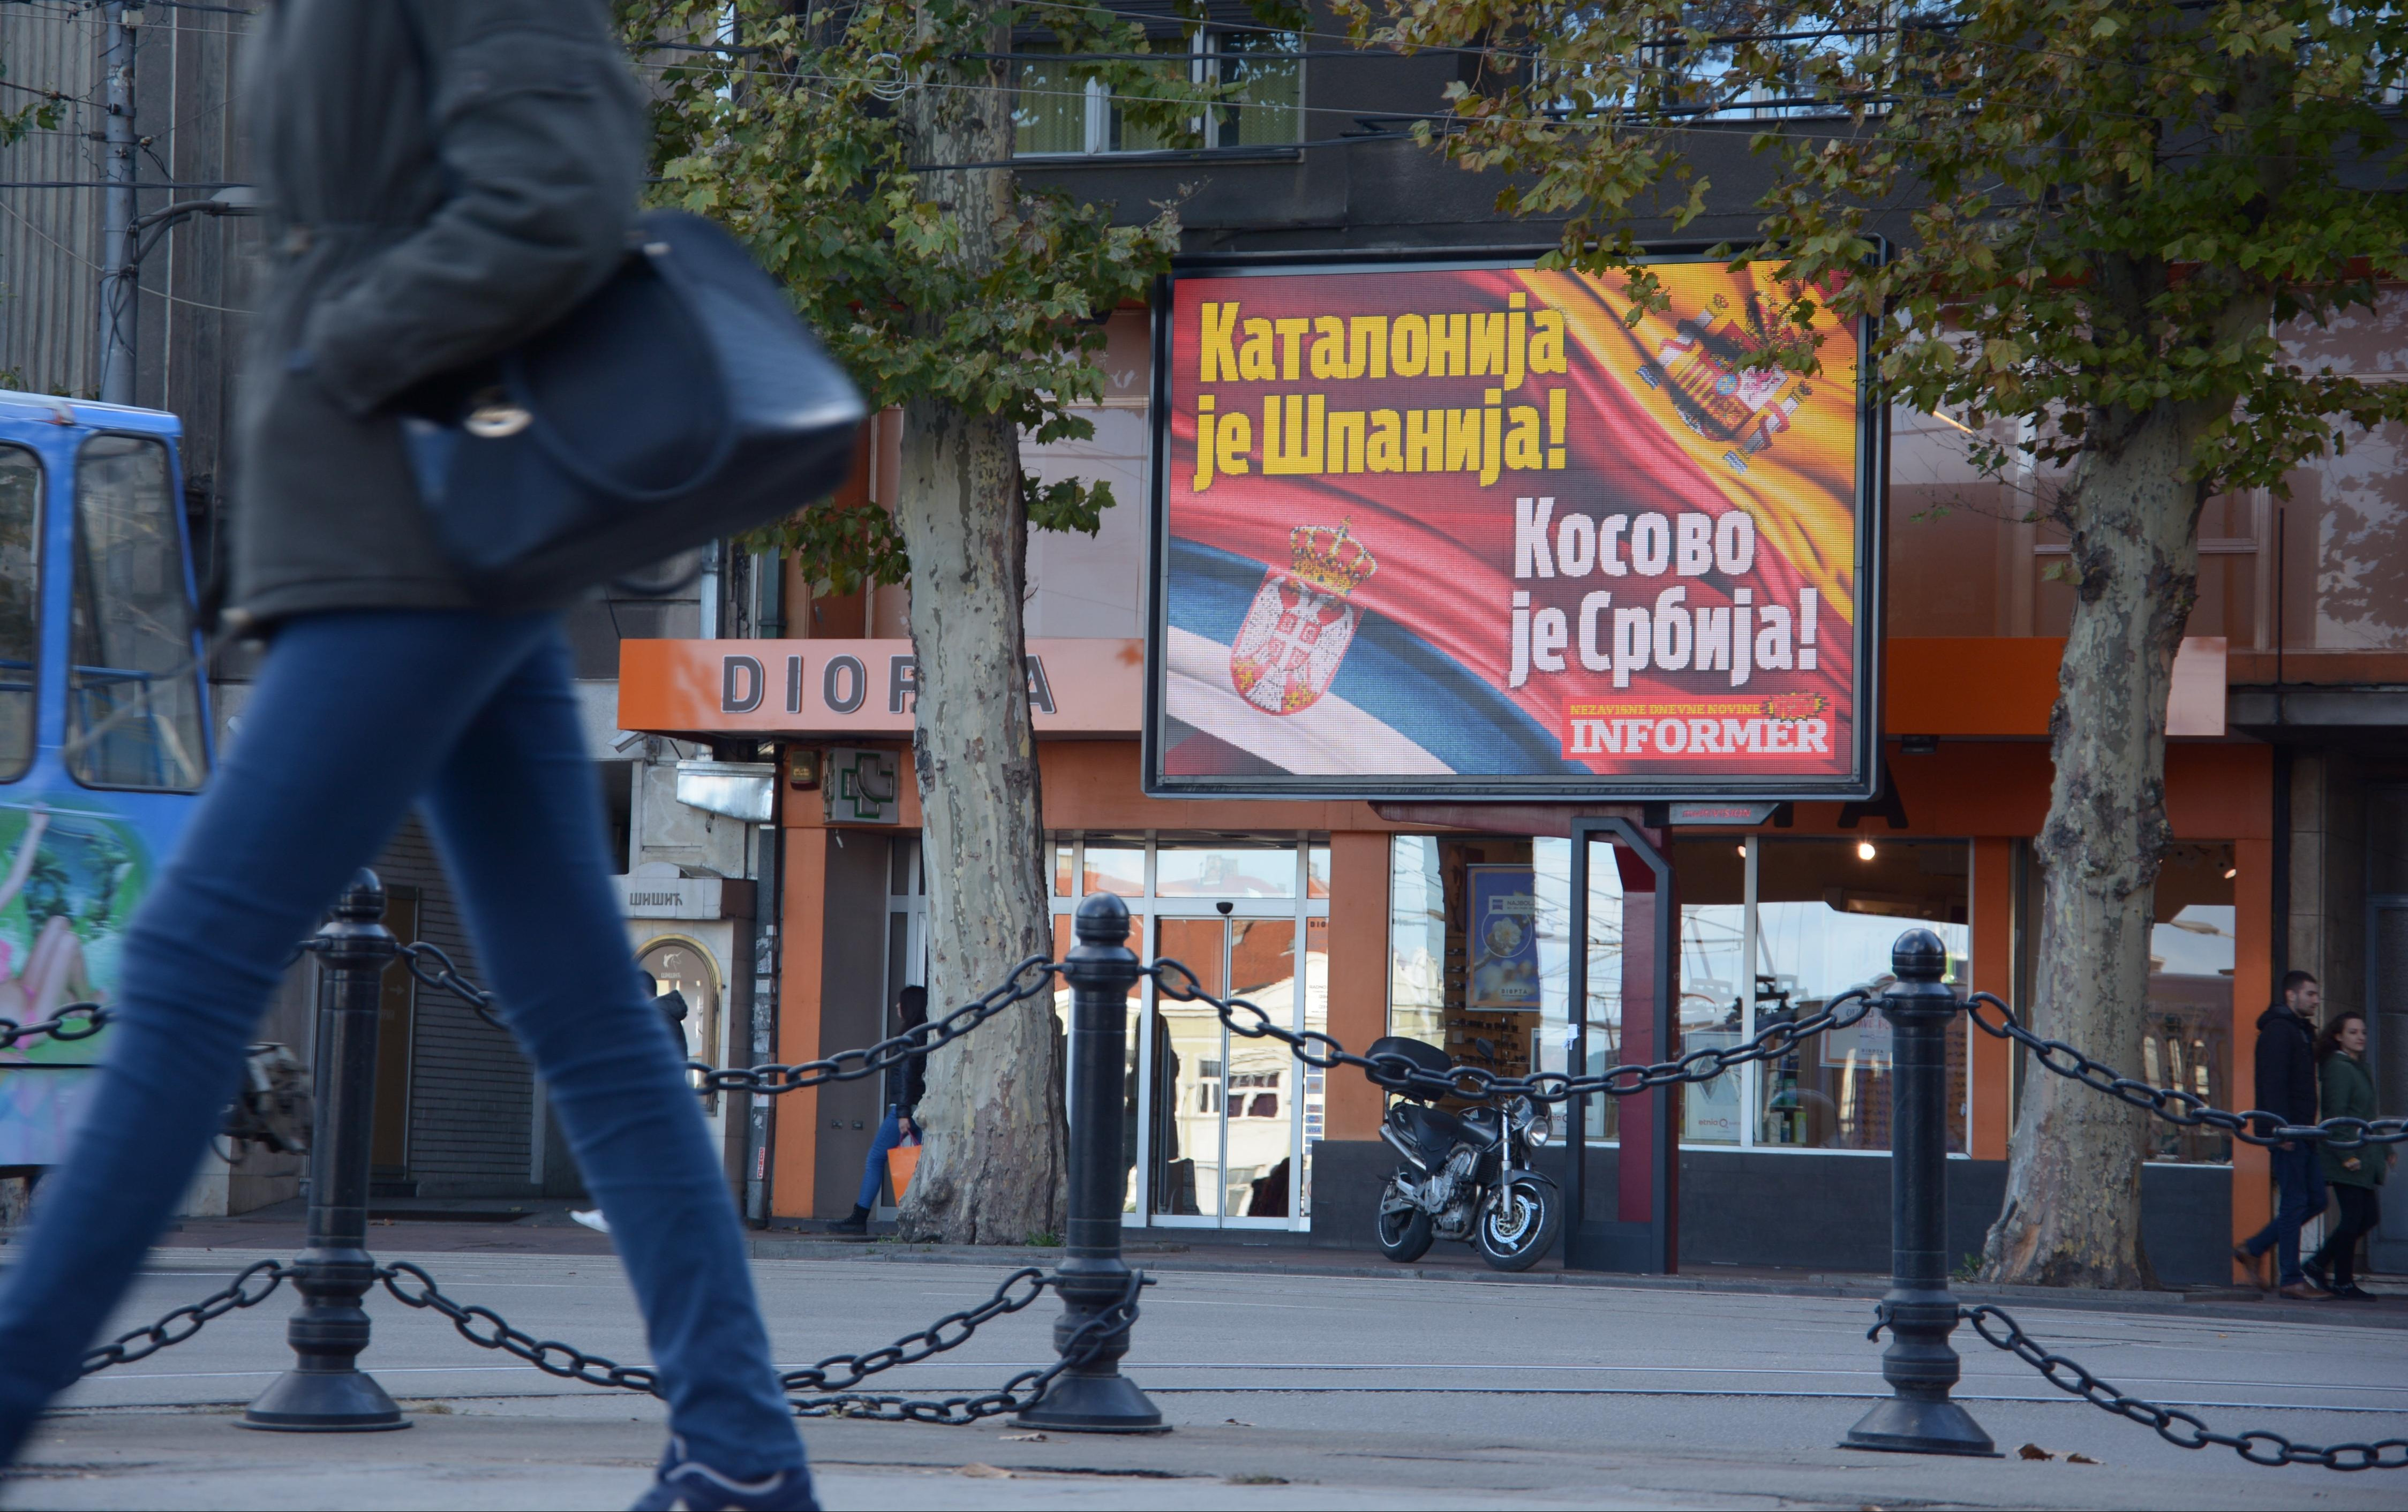 (FOTO) KATALONIJA JE ŠPANIJA, KOSOVO JE SRBIJA! Informerovi bilbordi podrške u centru Beograda!